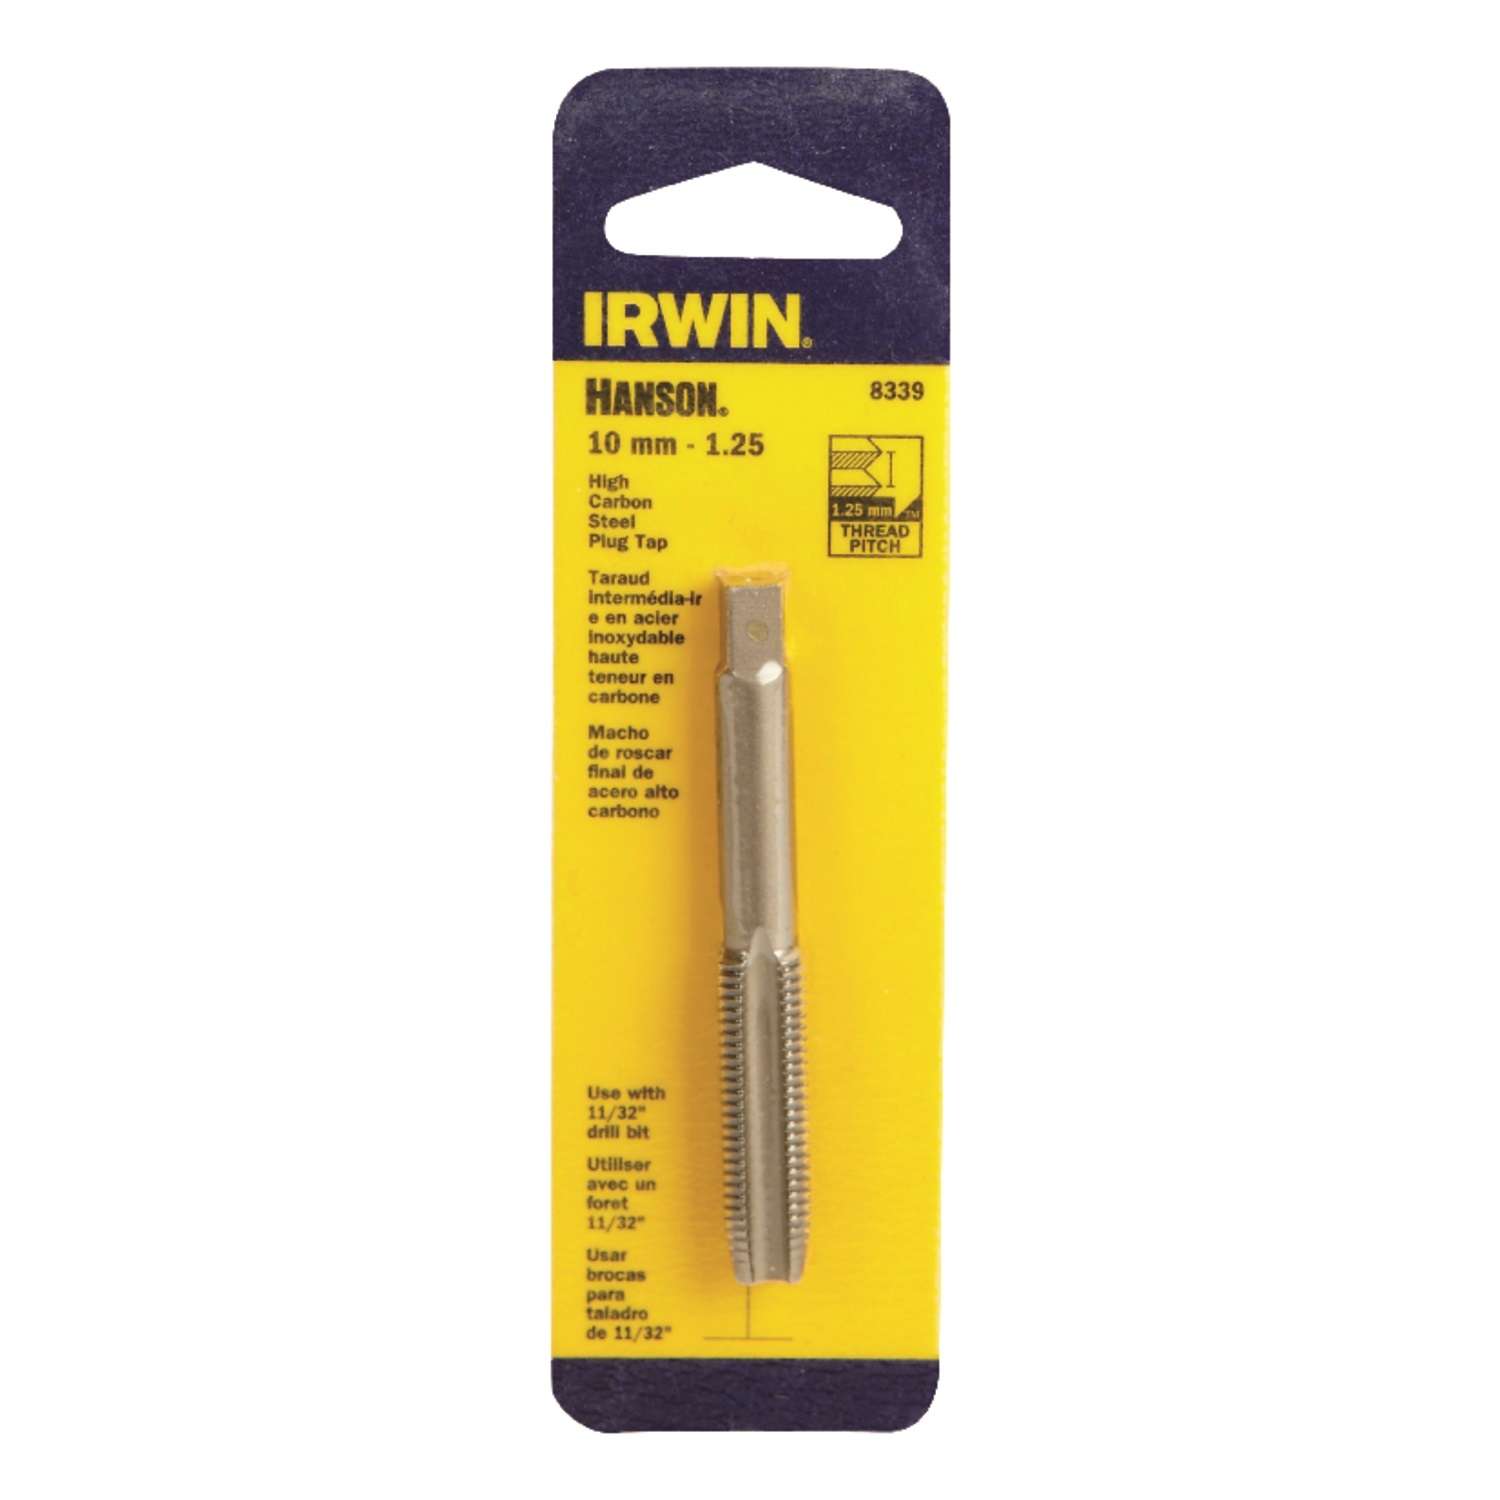 IRWIN M11 X 1.5 Plug Tap Metric Irwin 1741 ZR 11MM Carbon Steel Hand 4FL USA 1.50 RH 